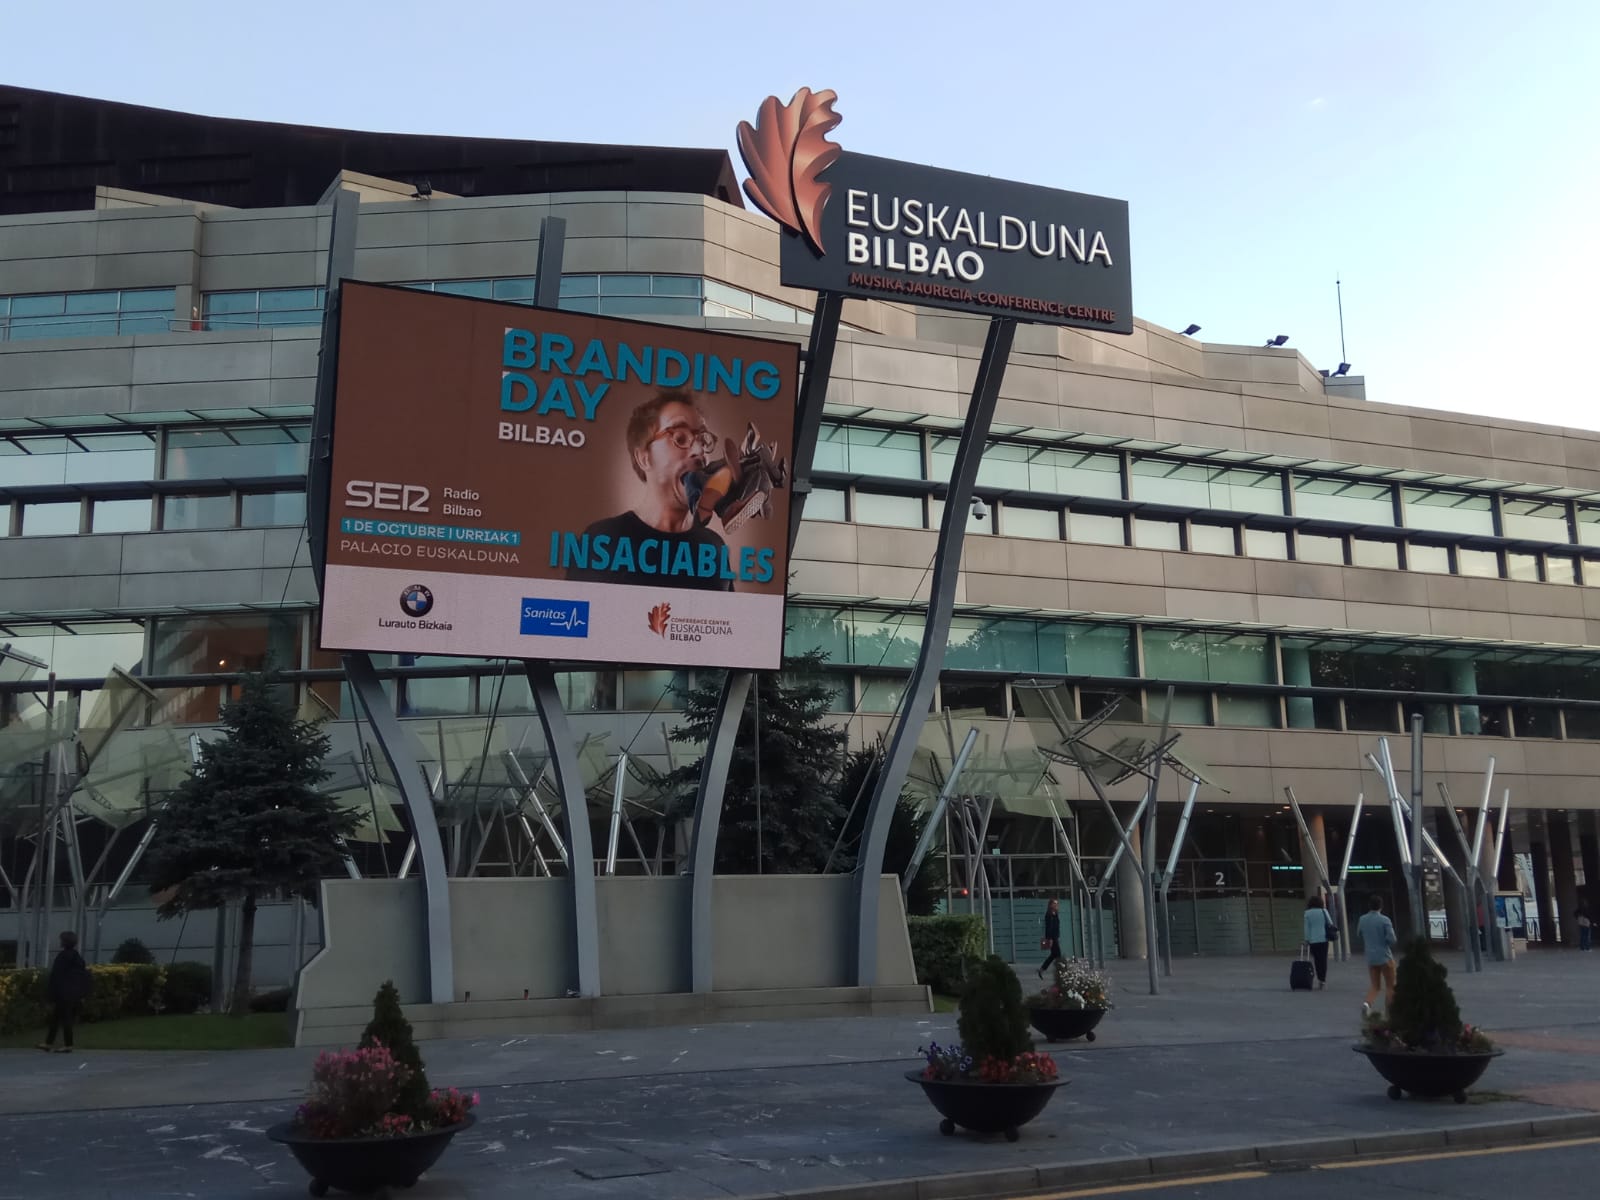 Branding Day Bilbao 2019, celebrado el 1 de octubre en el Palacio Euskalduna.